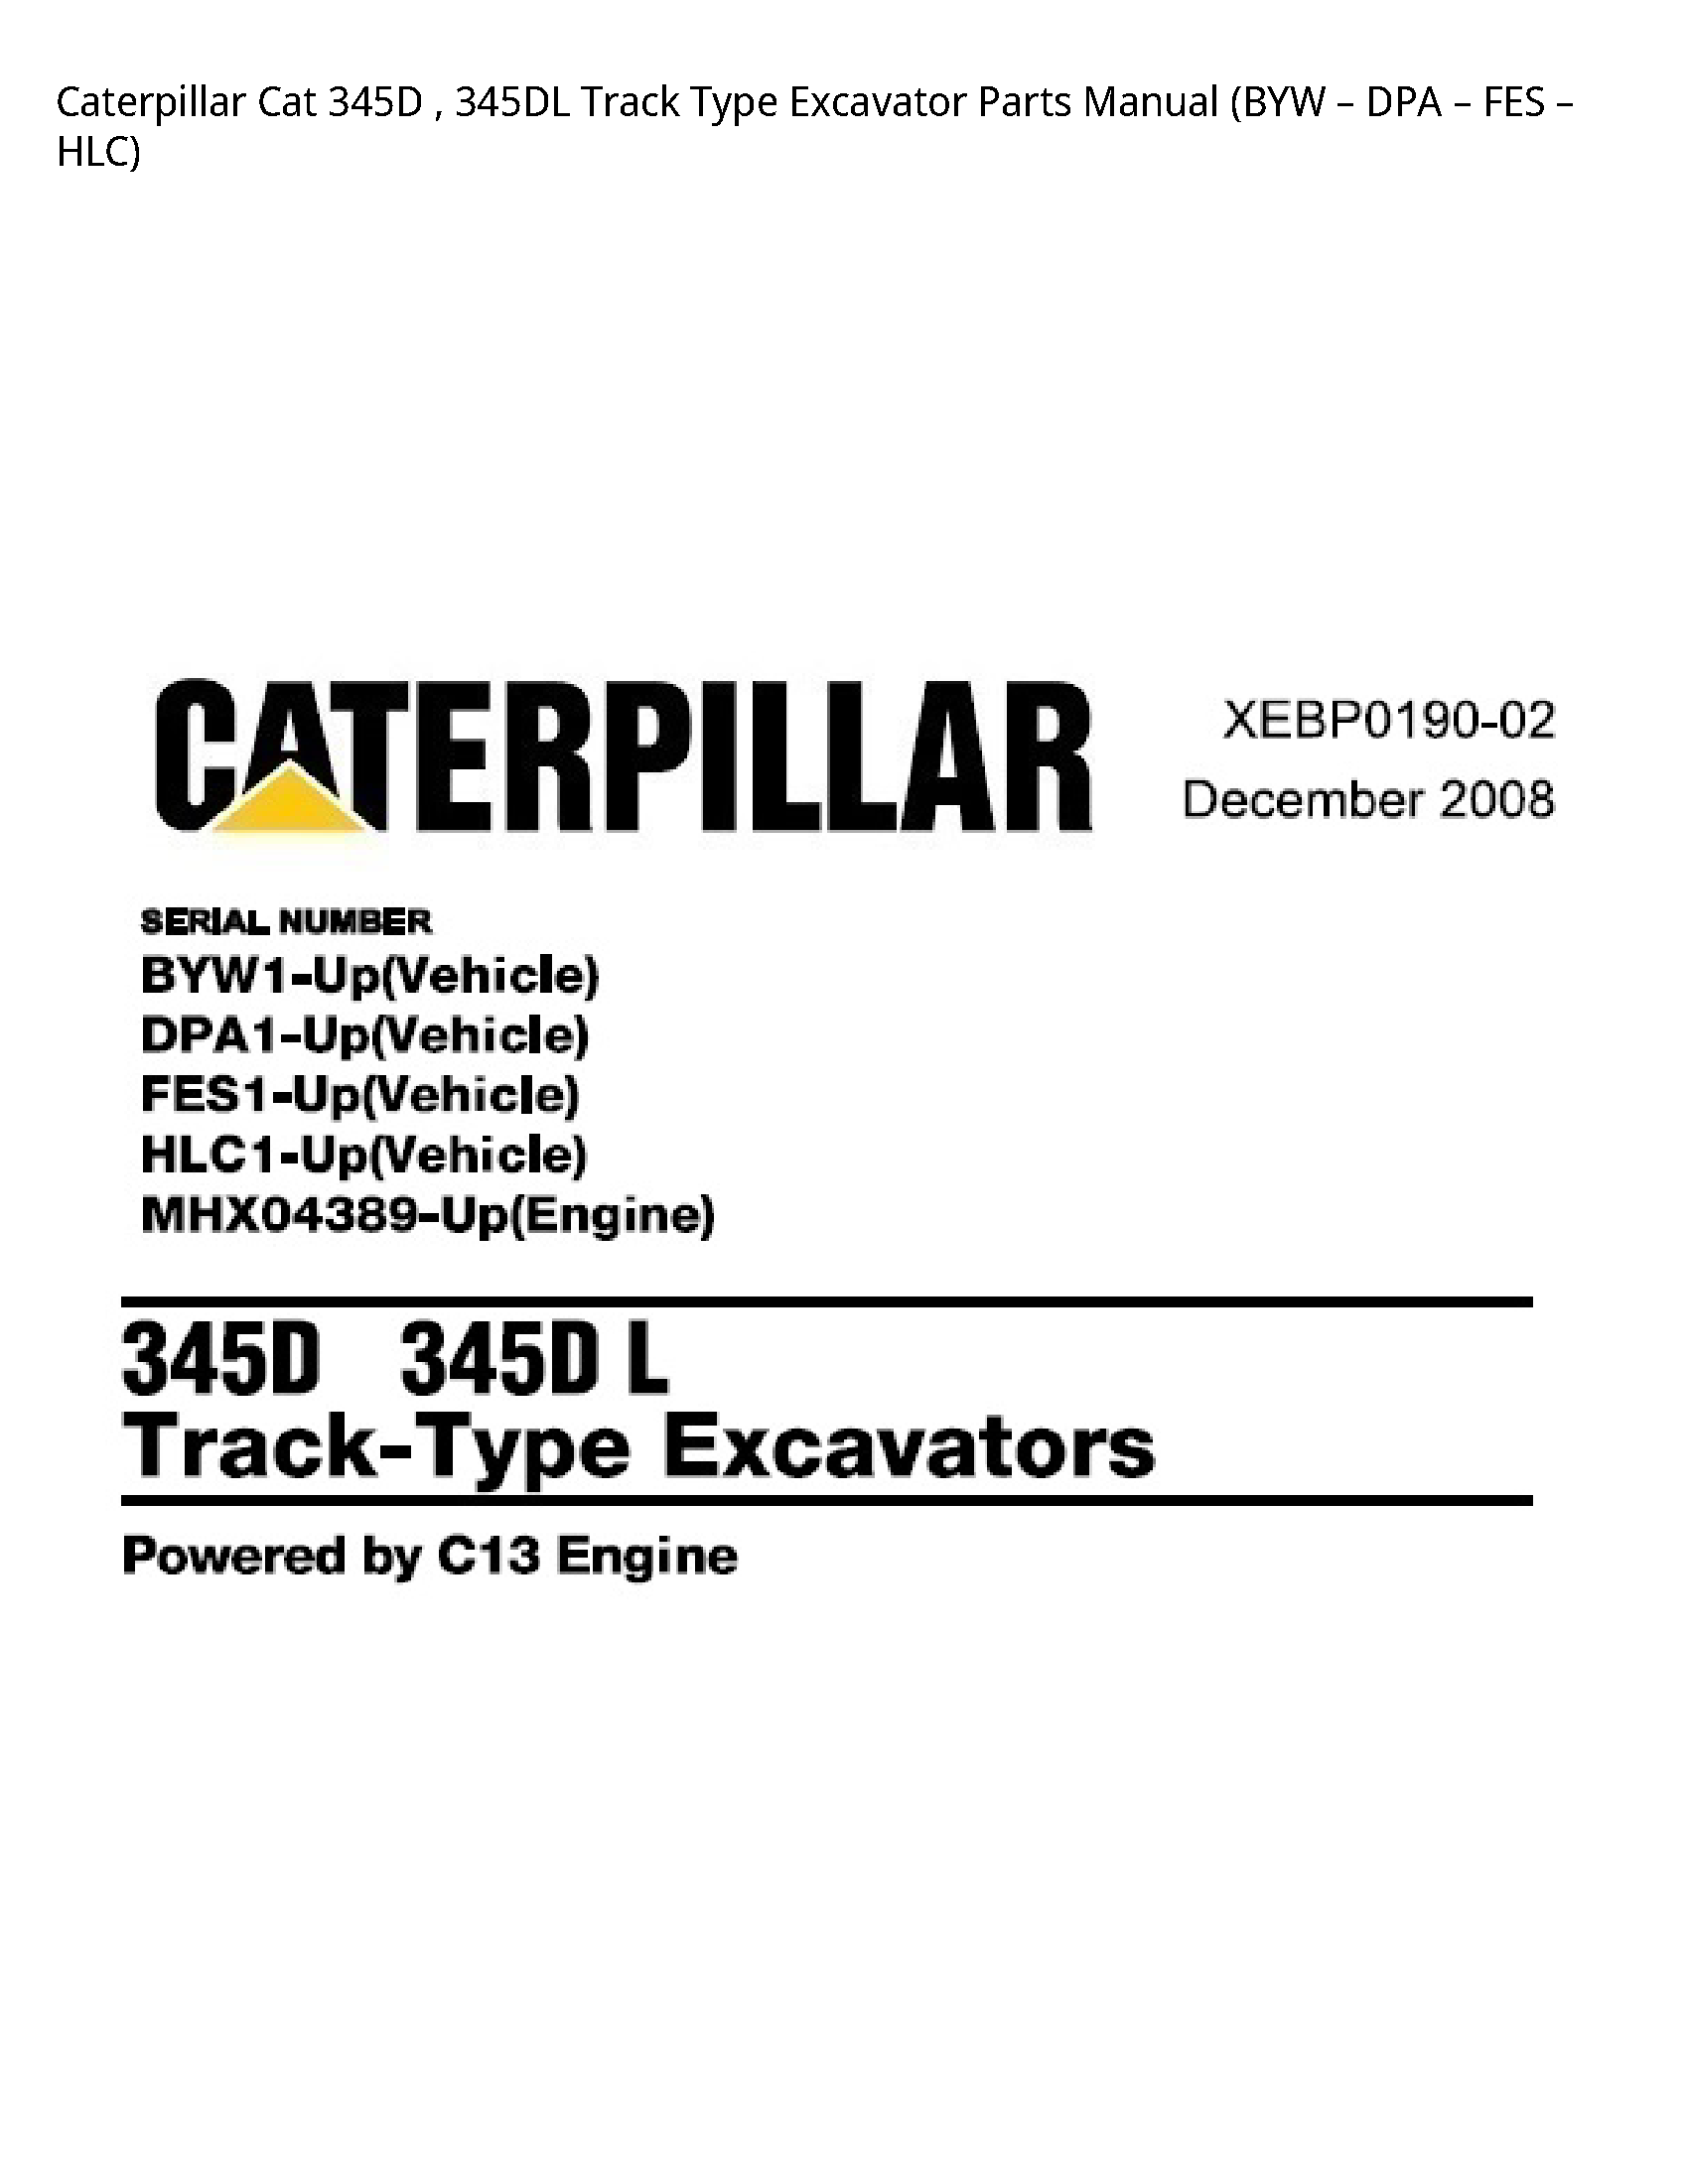 Caterpillar 345D Cat Track Type Excavator Parts manual